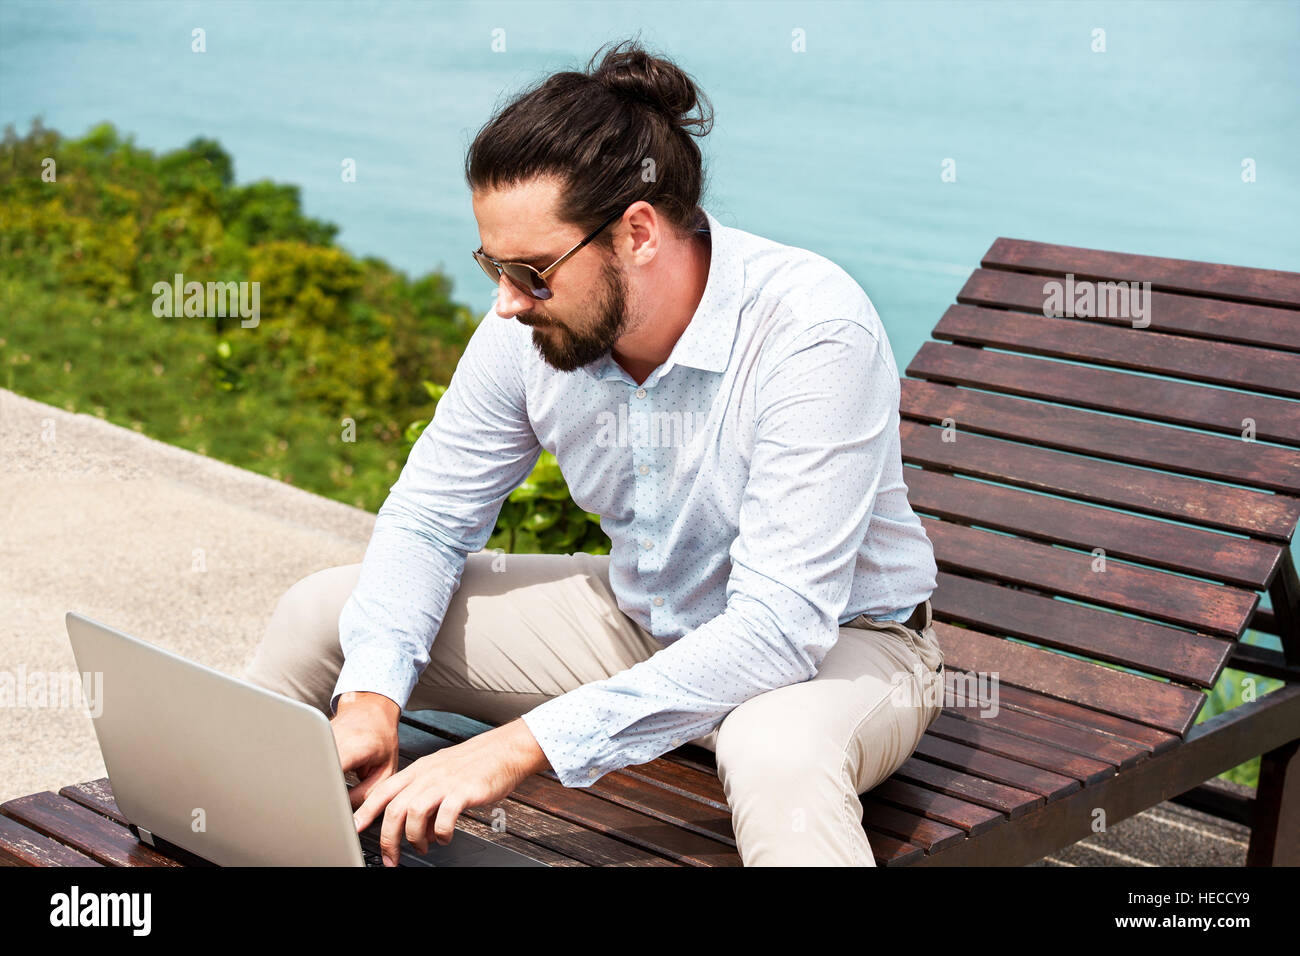 Businessman wearing a suit sur une chaise de la saisie de l'ordinateur portable sur la plage Banque D'Images